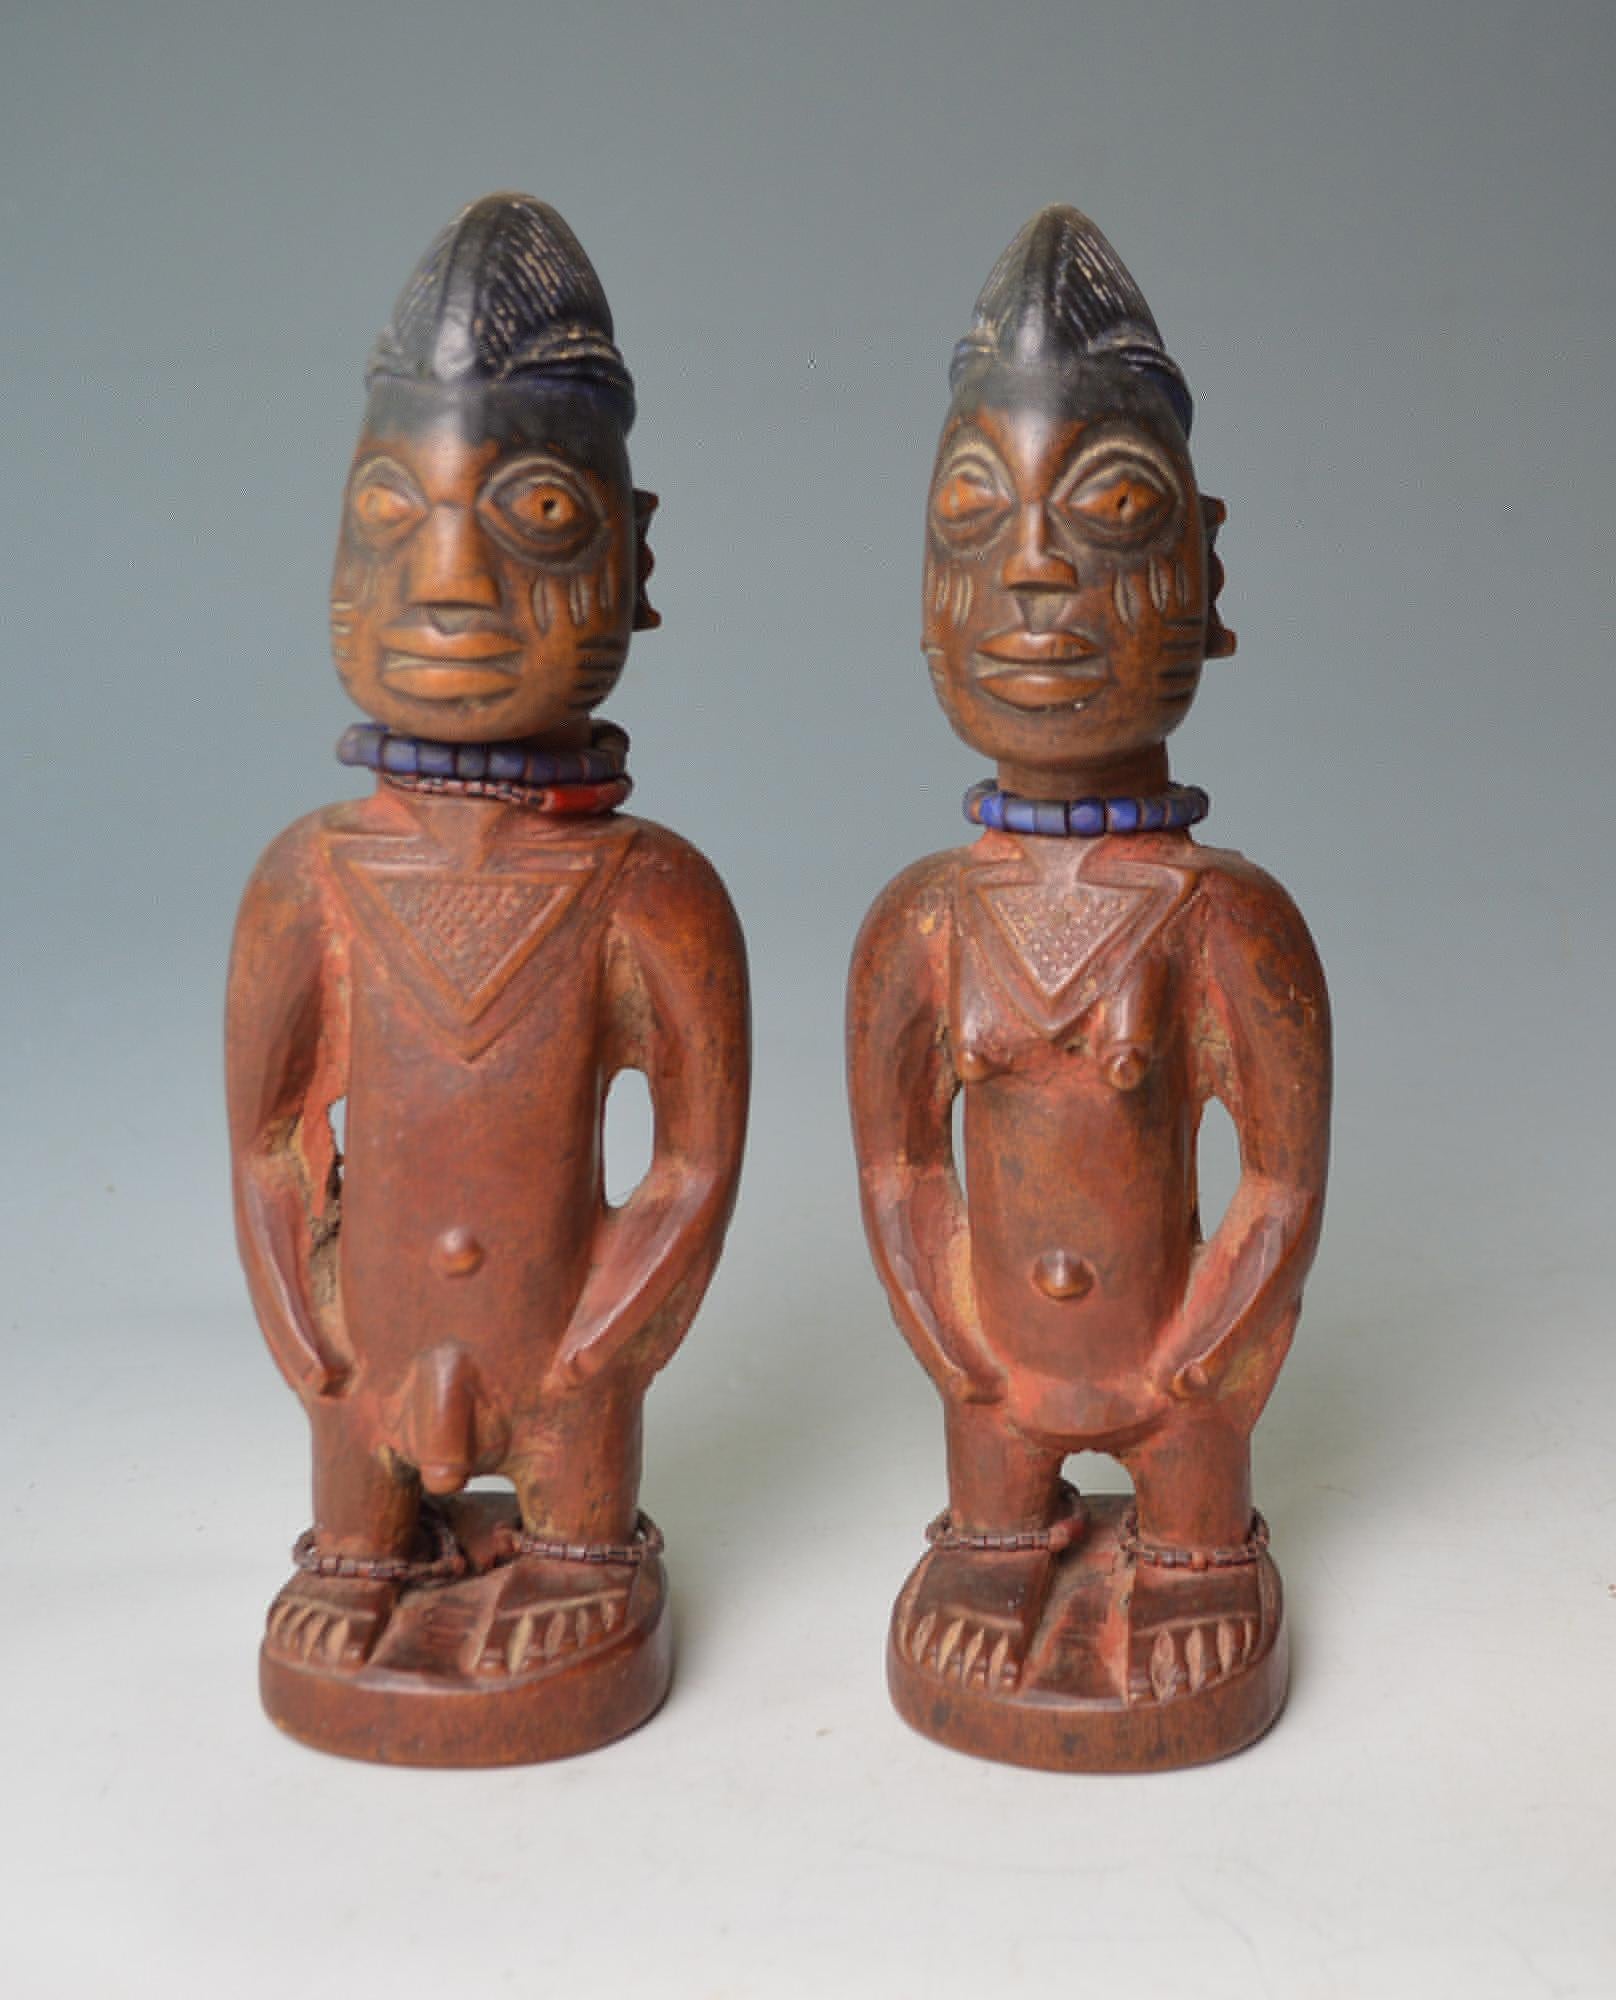 Ein schönes Paar oder Yoruba Ere Ibeji Figuren Nigeria

Ein männliches und weibliches Ibeji-Figurenpaar mit islamischen Tirah-Halsketten

Zeitraum frühes 20. Jahrhundert Höhe 11 Zoll 28 cm

Ex deutsche Sammlung
 
Ibeji-Figuren sind kleine